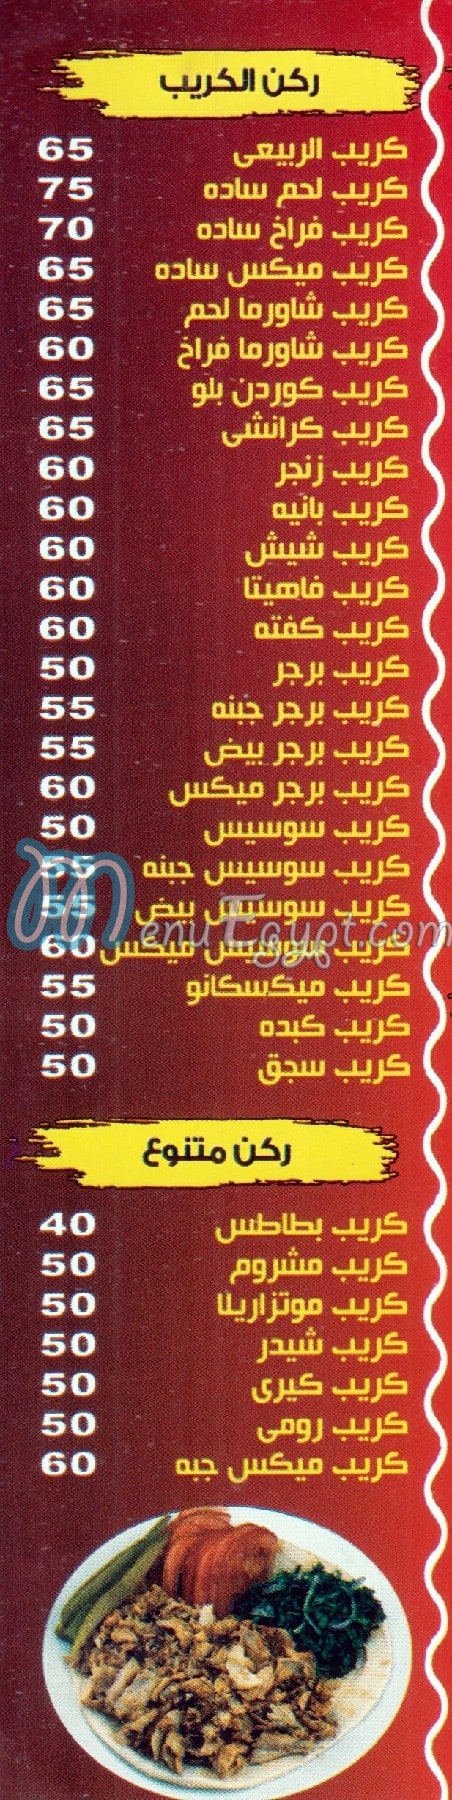 مطعم الربيعي مصر